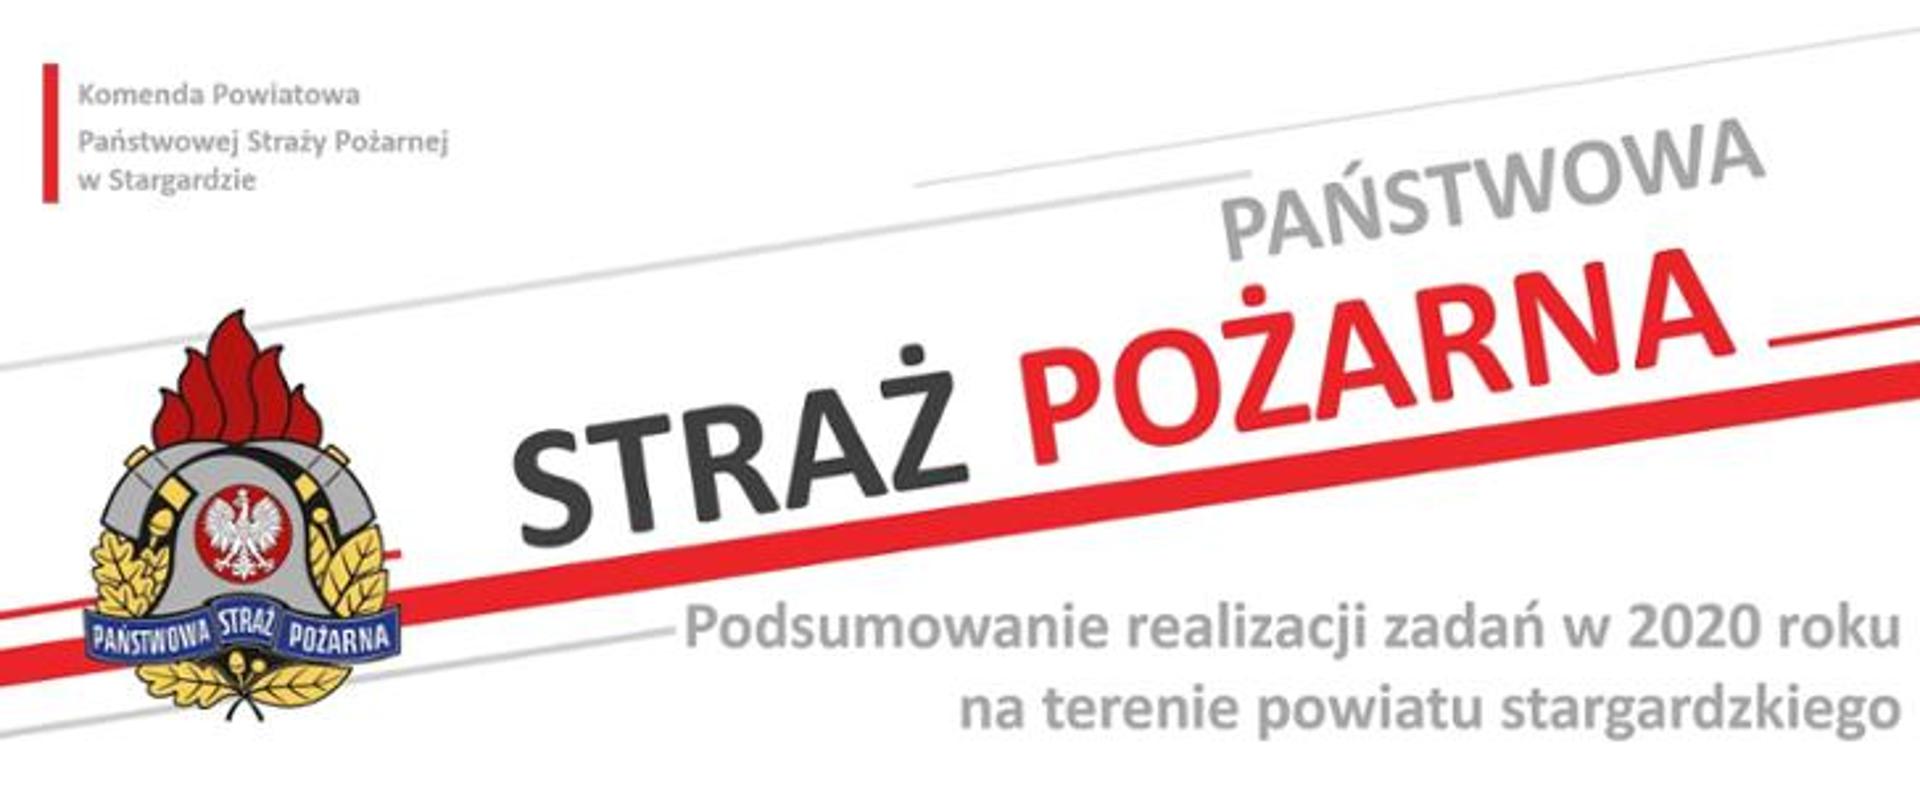 Podsumowanie realizacji zadań w 2020 roku na terenie powiatu stargardzkiego.